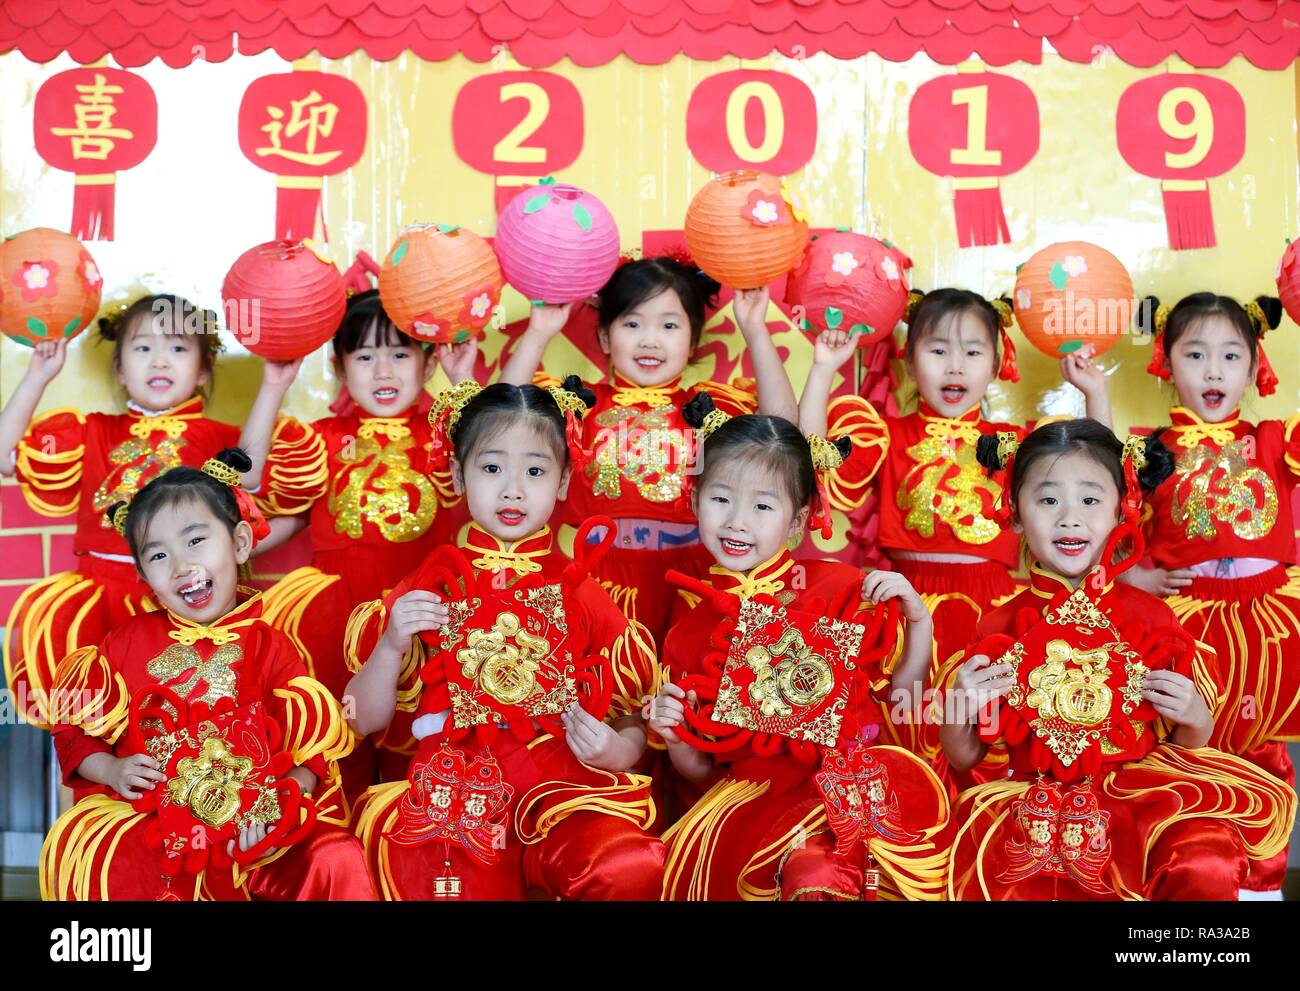 Qingdao, Cina Shandong. 1a gen, 2019. Gli alunni vestiti in costumi di festa posano per una foto di gruppo a Qingdao, Cina orientale della provincia di Shandong, 1 gennaio, 2019. Le varie attività sono state organizzate in tutta la Cina per salutare l'anno di 2019. Credito: Liang Xiaopeng/Xinhua/Alamy Live News Foto Stock